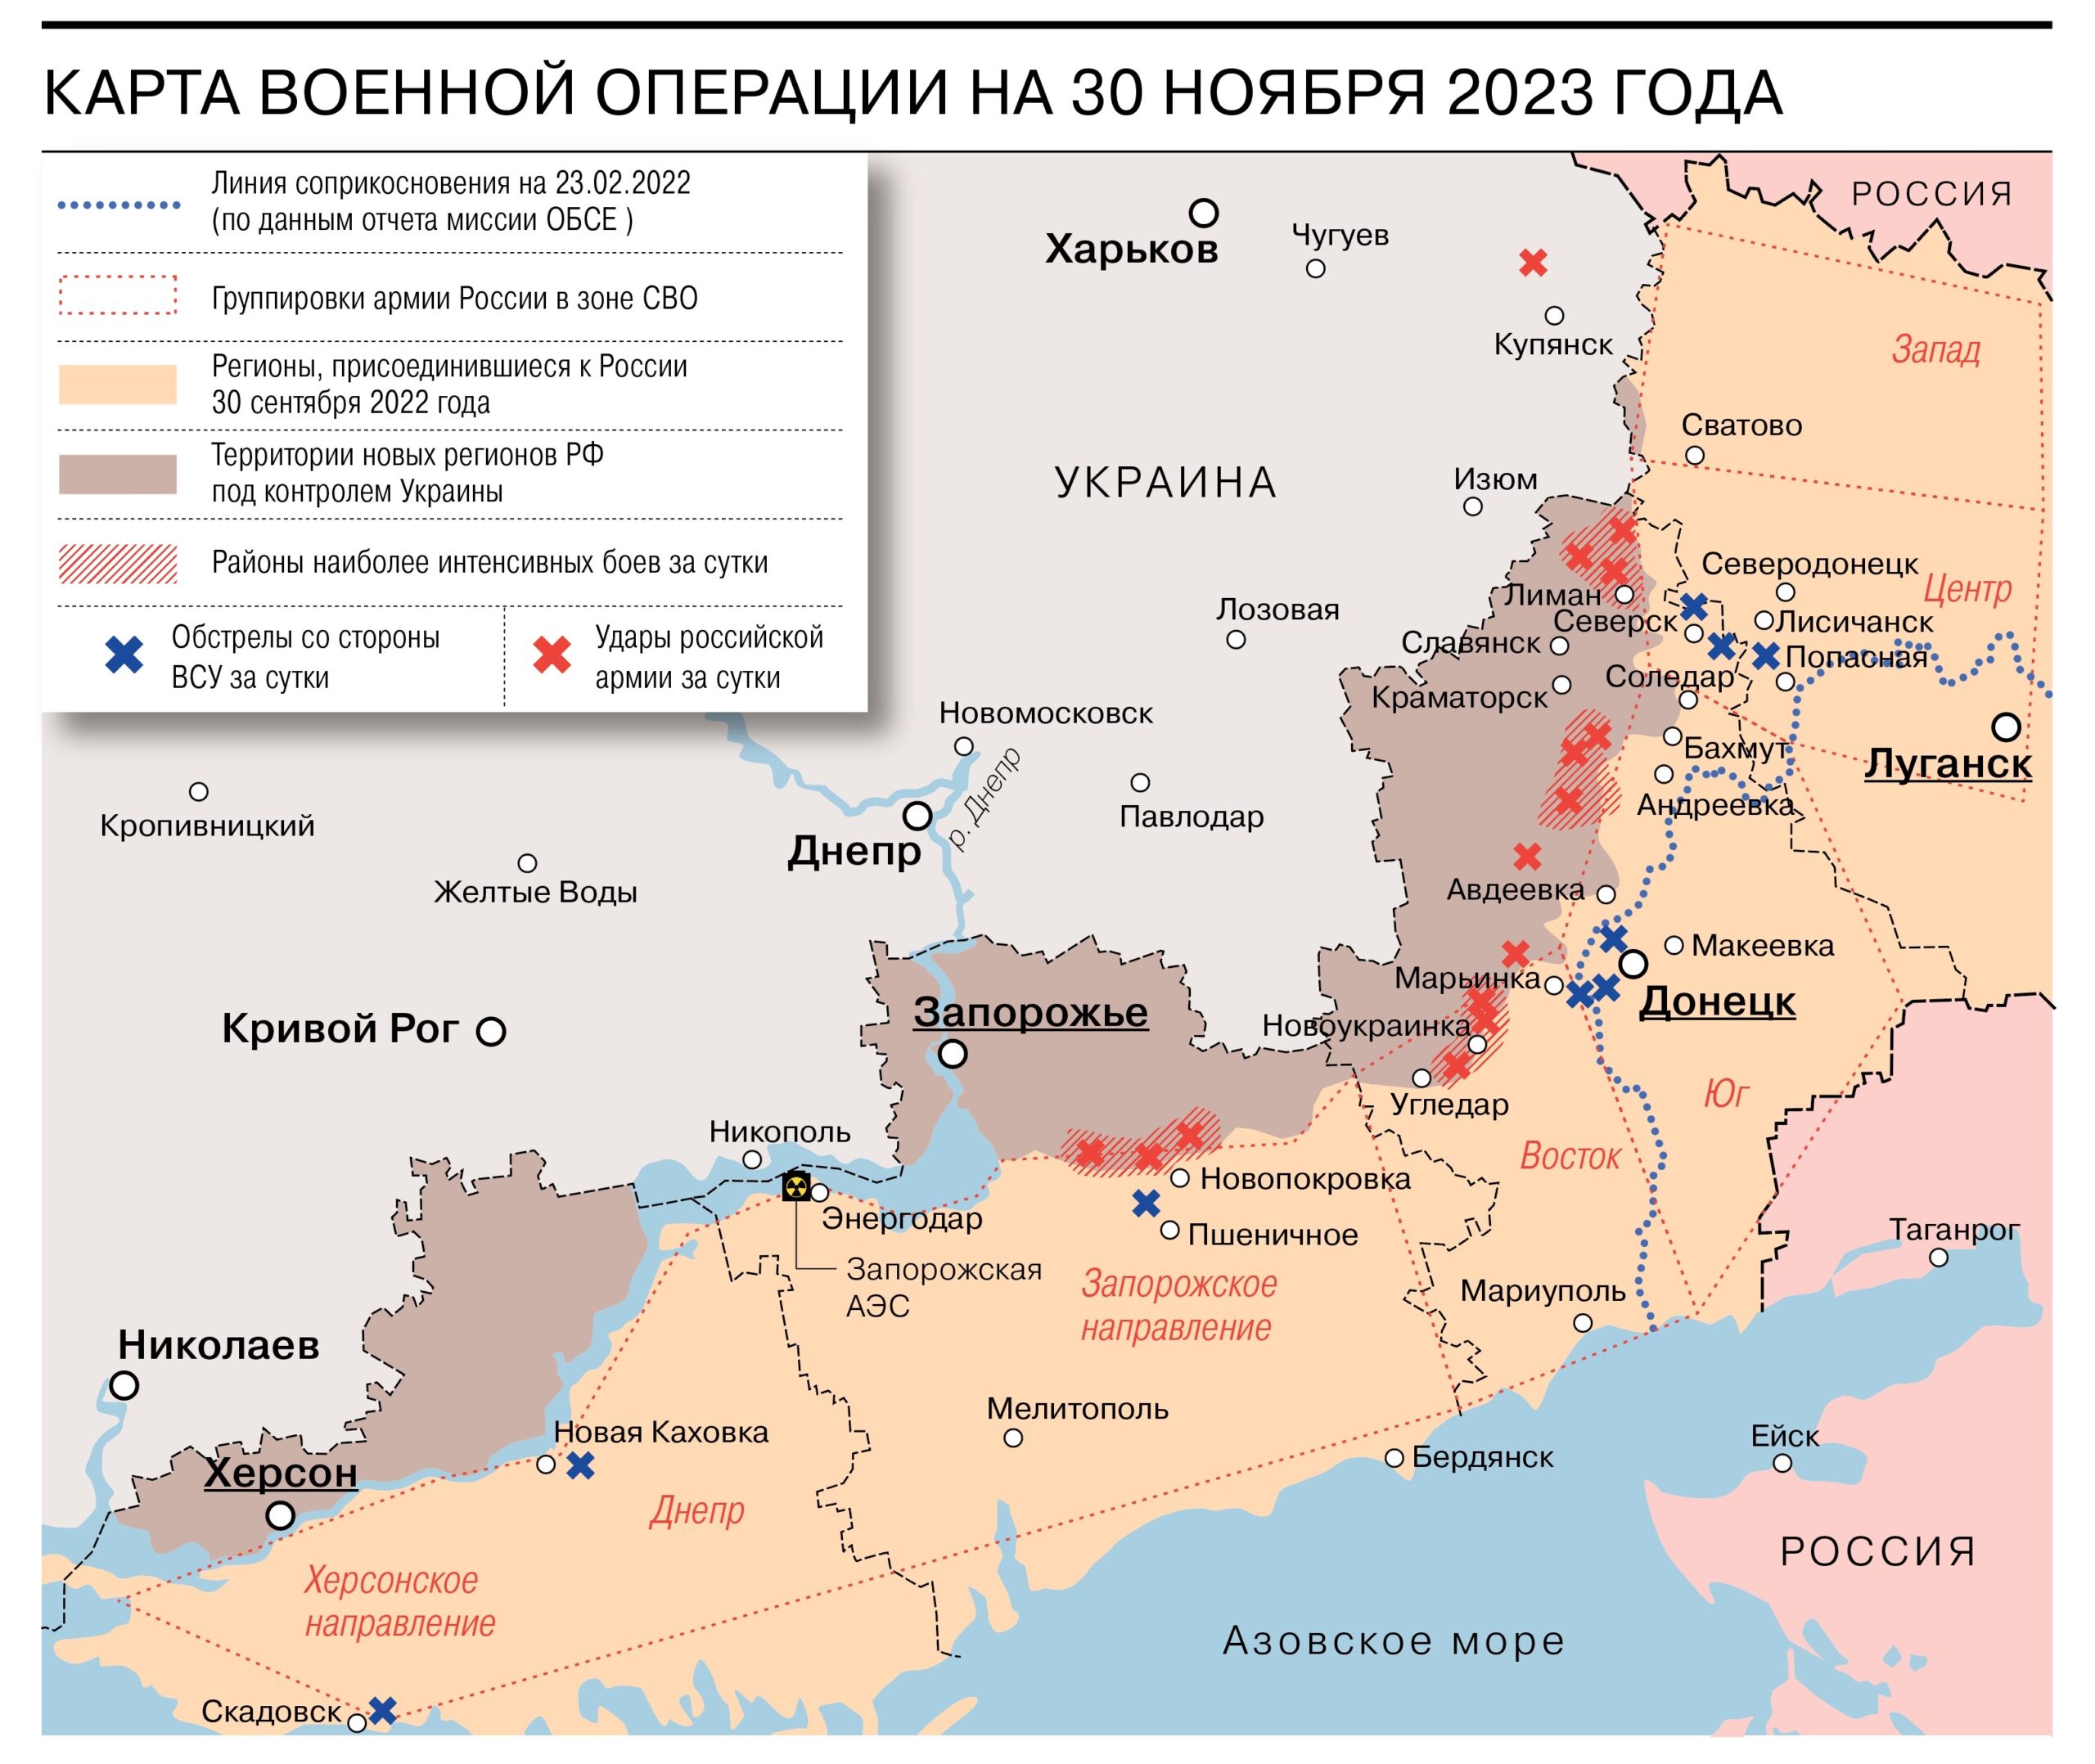 Опубликована карта военной операции ВС РФ на 30 ноября 2023 года